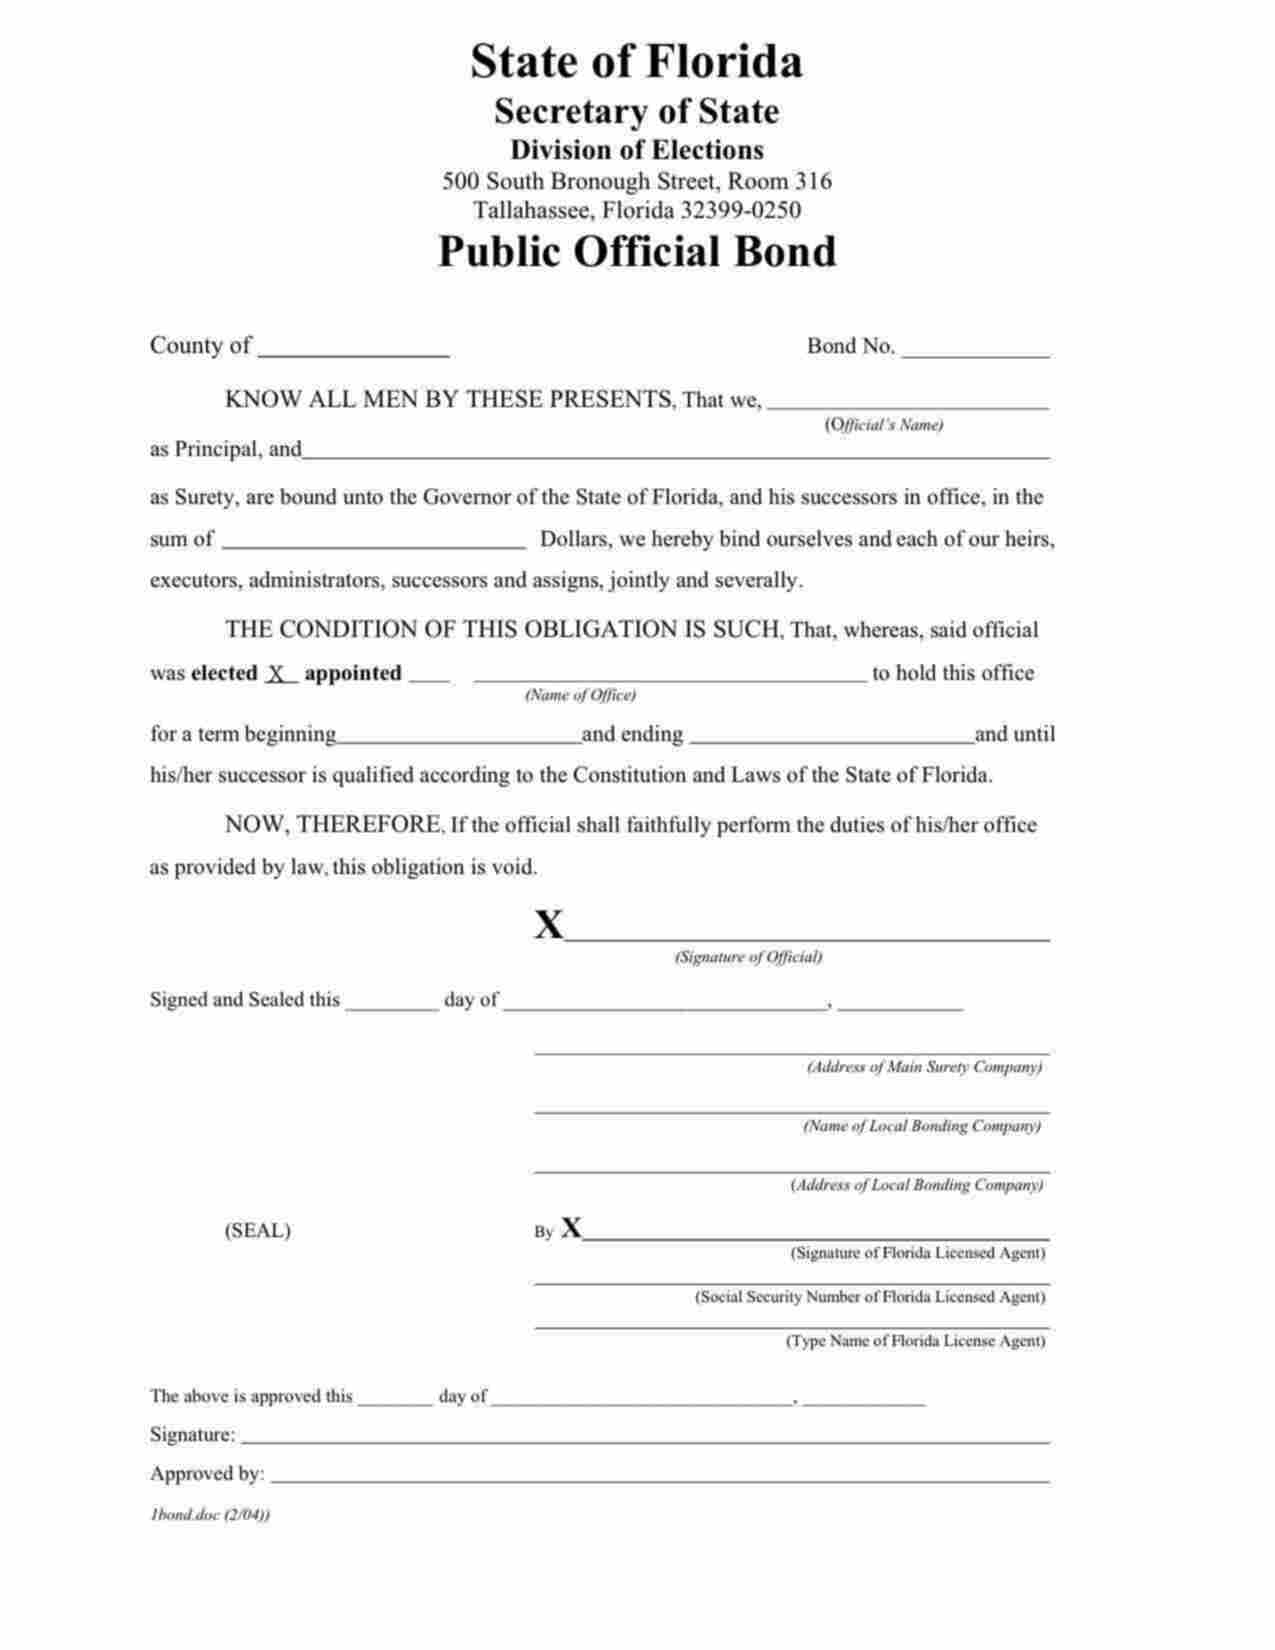 Florida Public Official Bond Form